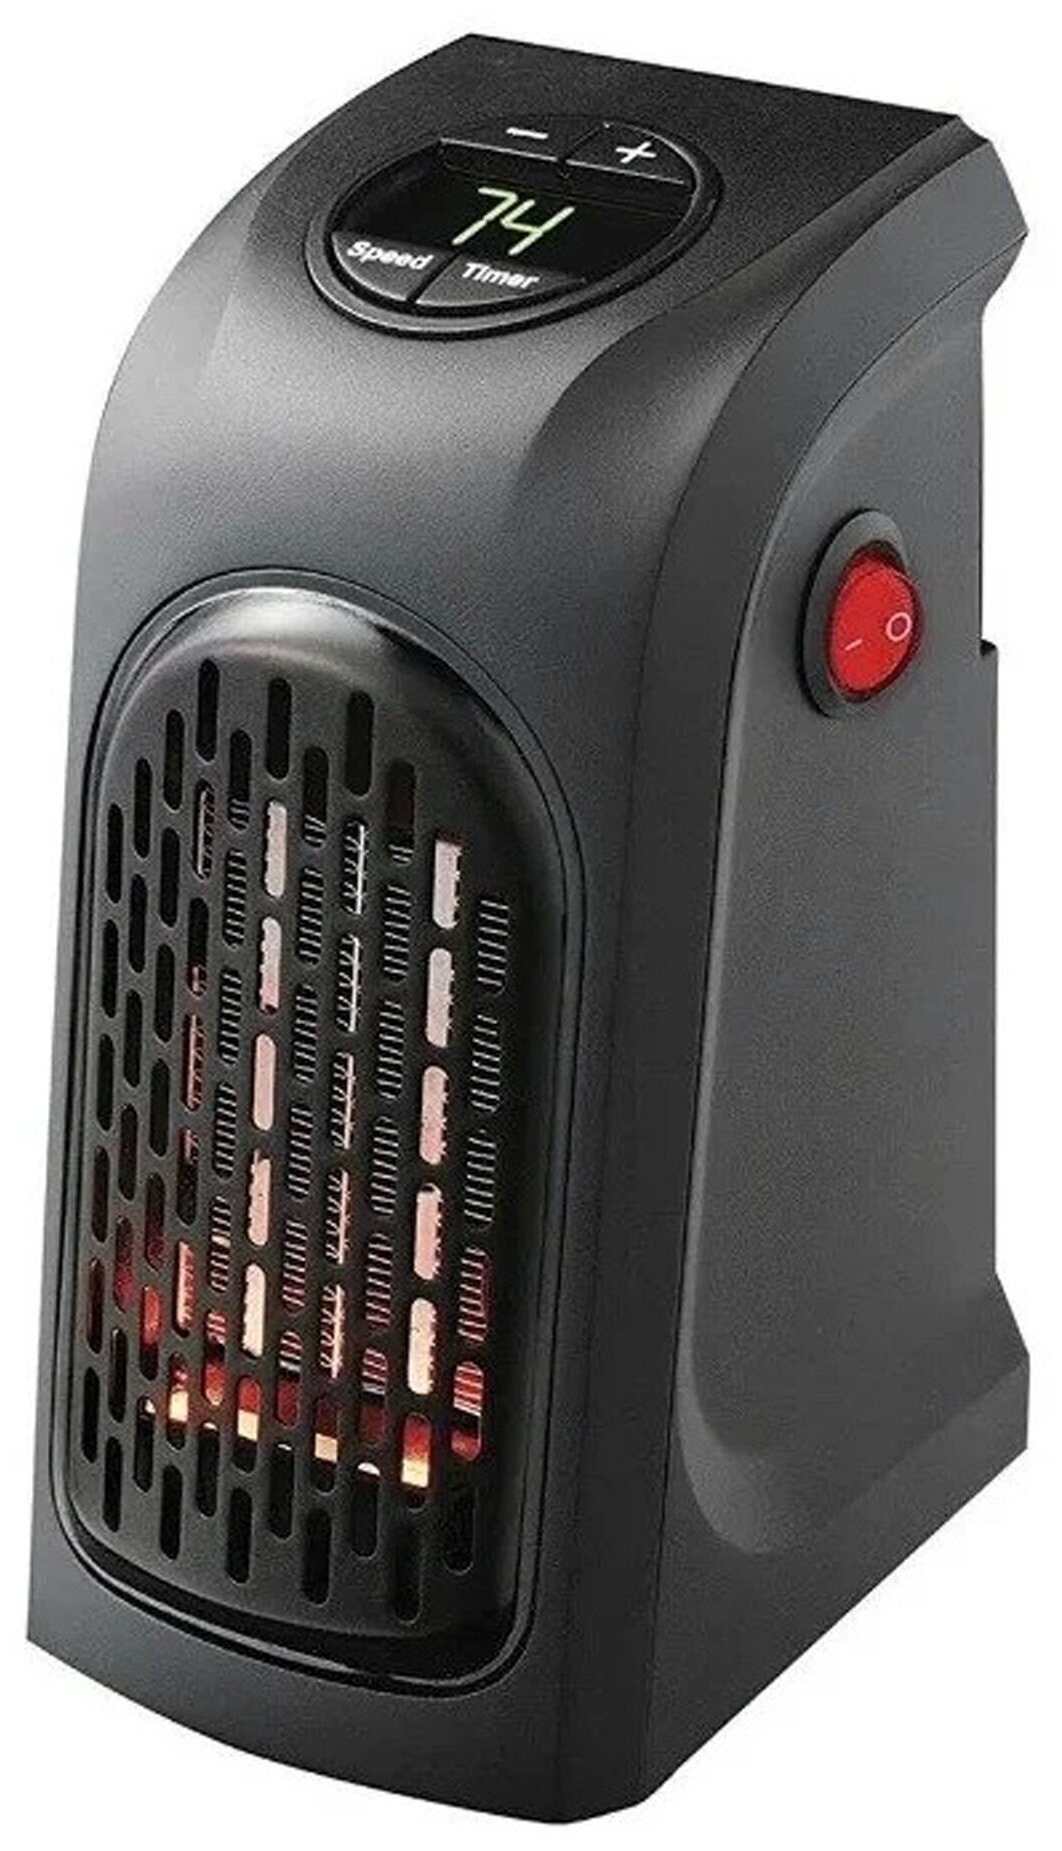 Компактный тепловентилятор Быстрое тепло Handy Heater без пульта